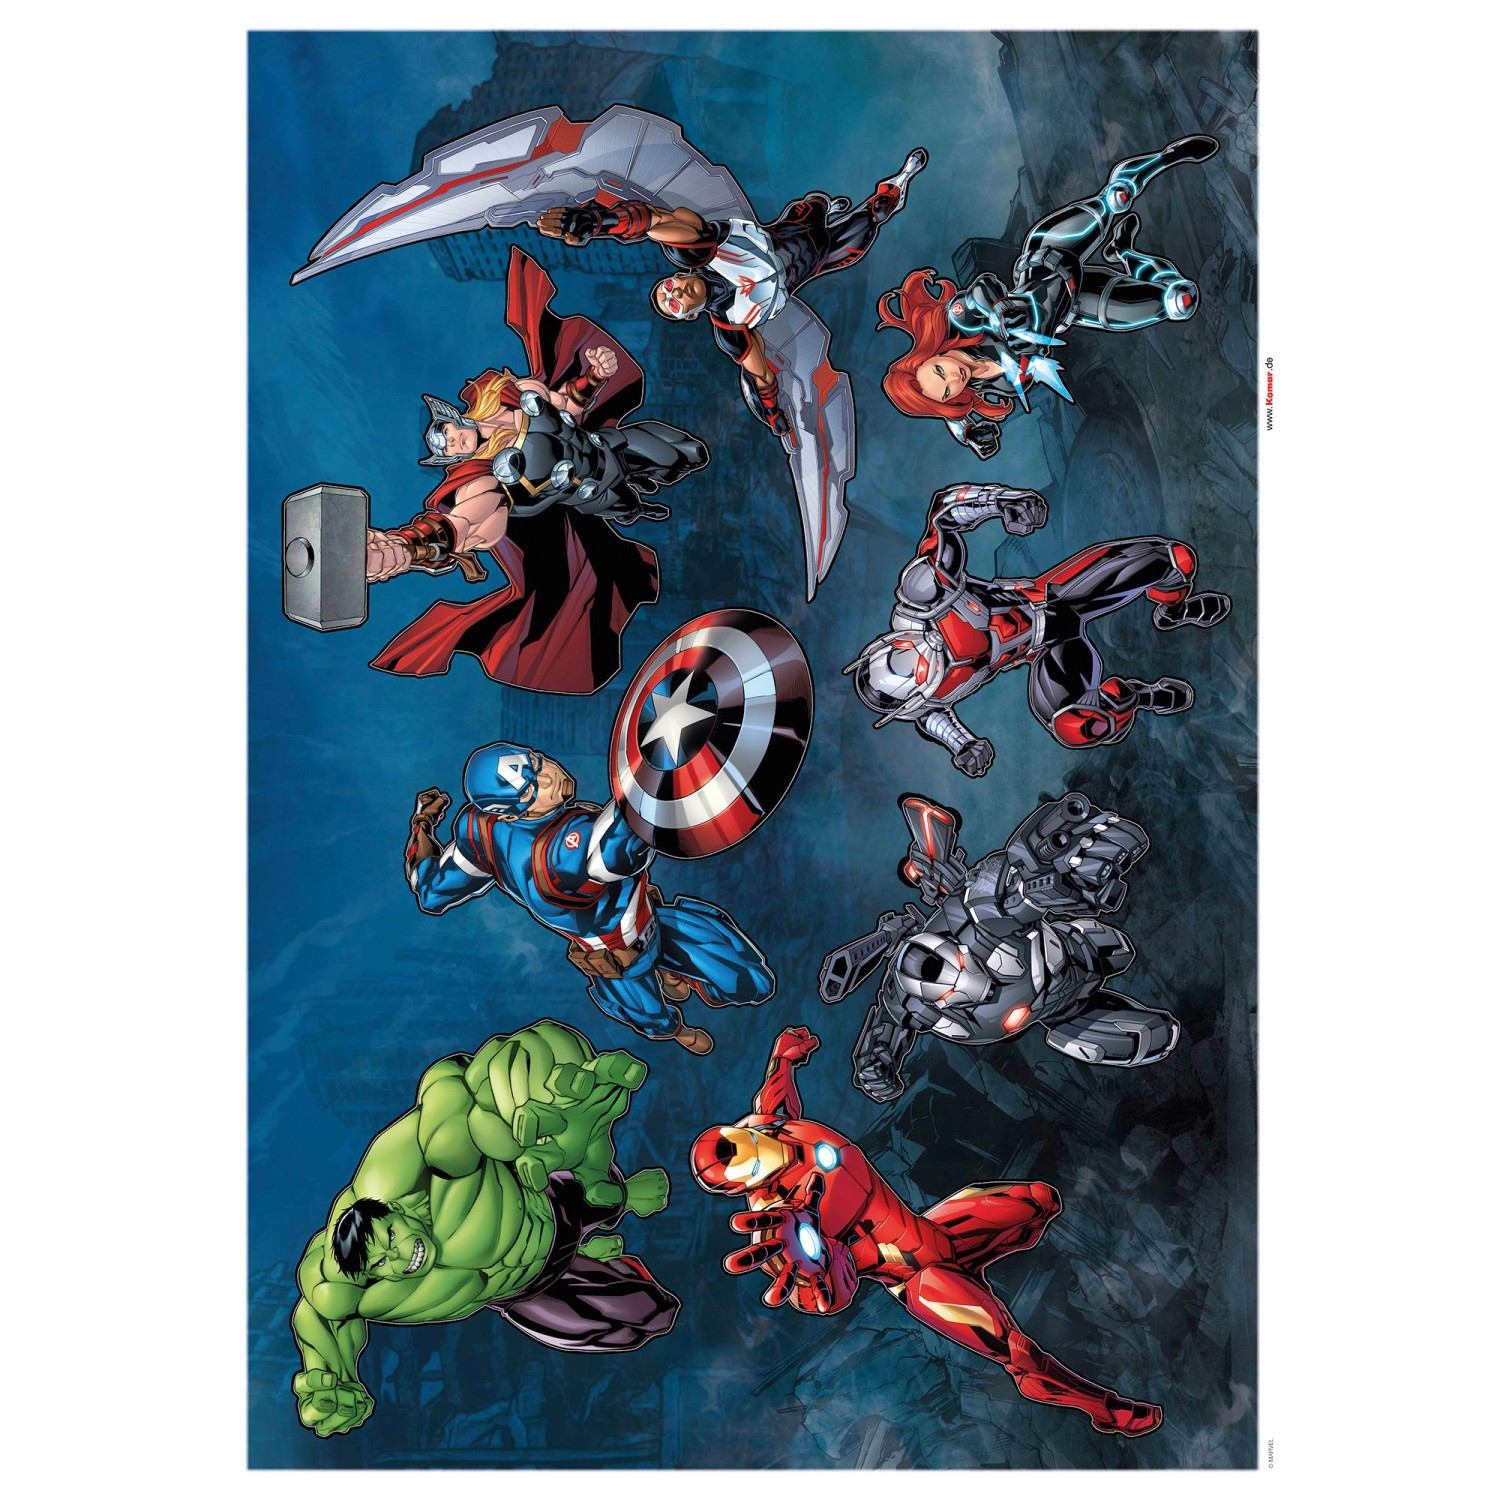 Komar Wandsticker Avengers Crew 30 cm x 30 cm